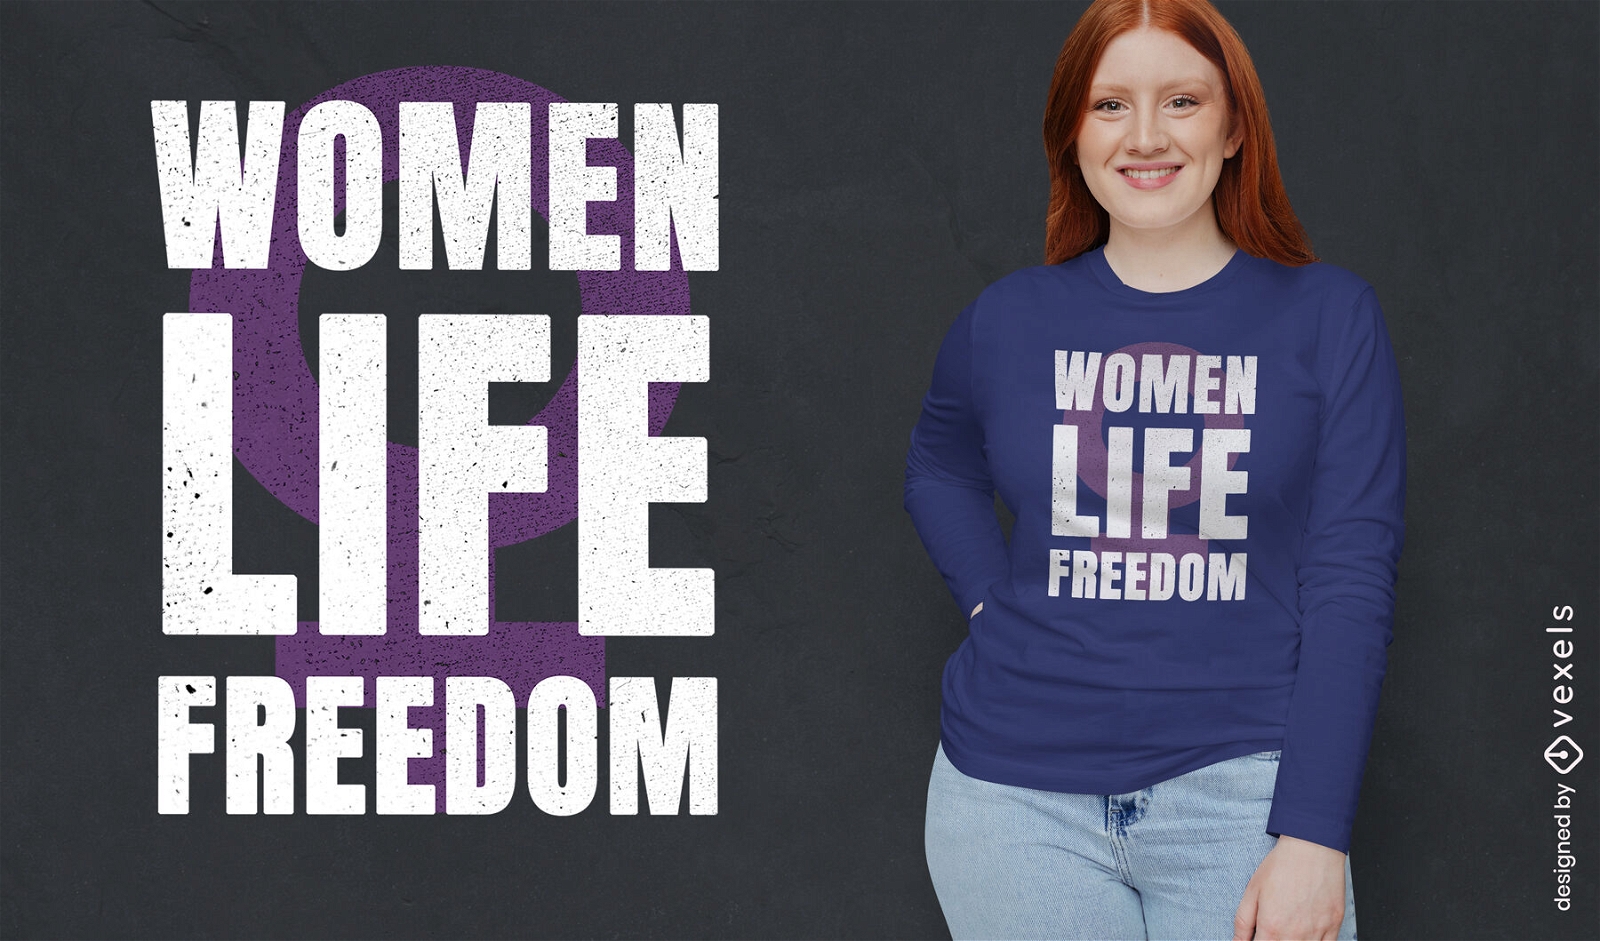 Freedom for women t-shirt design